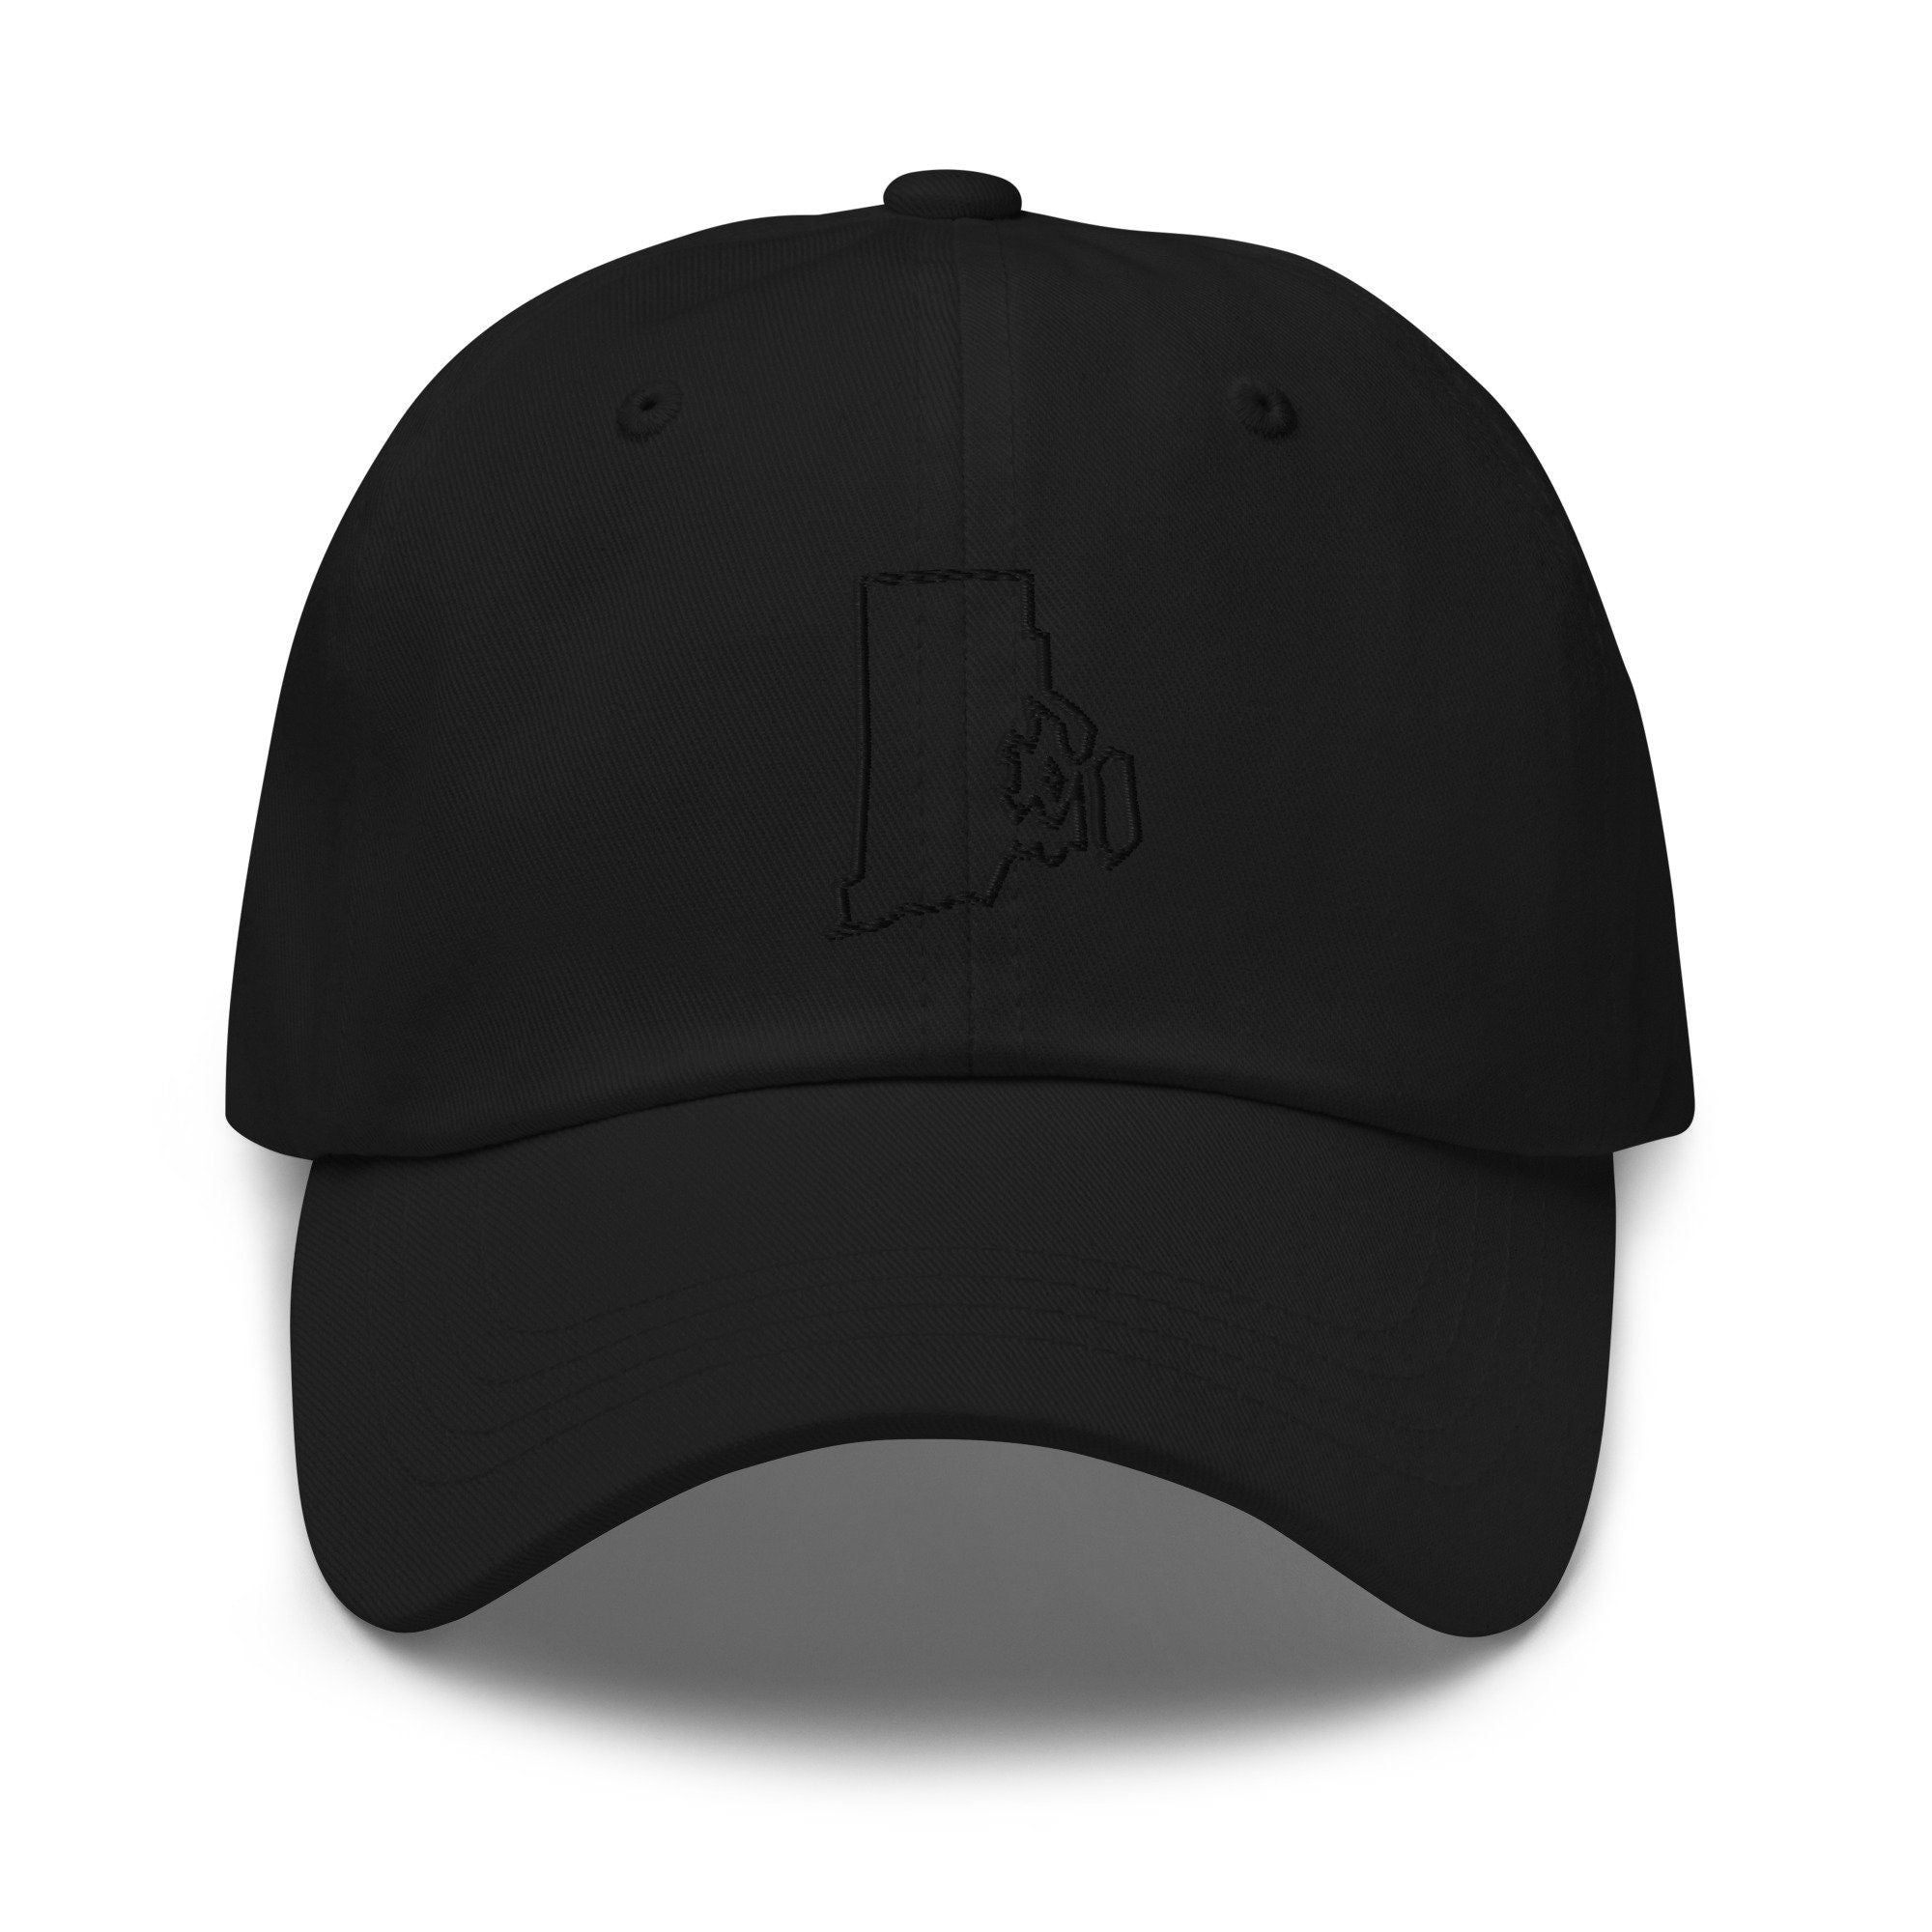 Rhode Island Embroidered Dad Hat